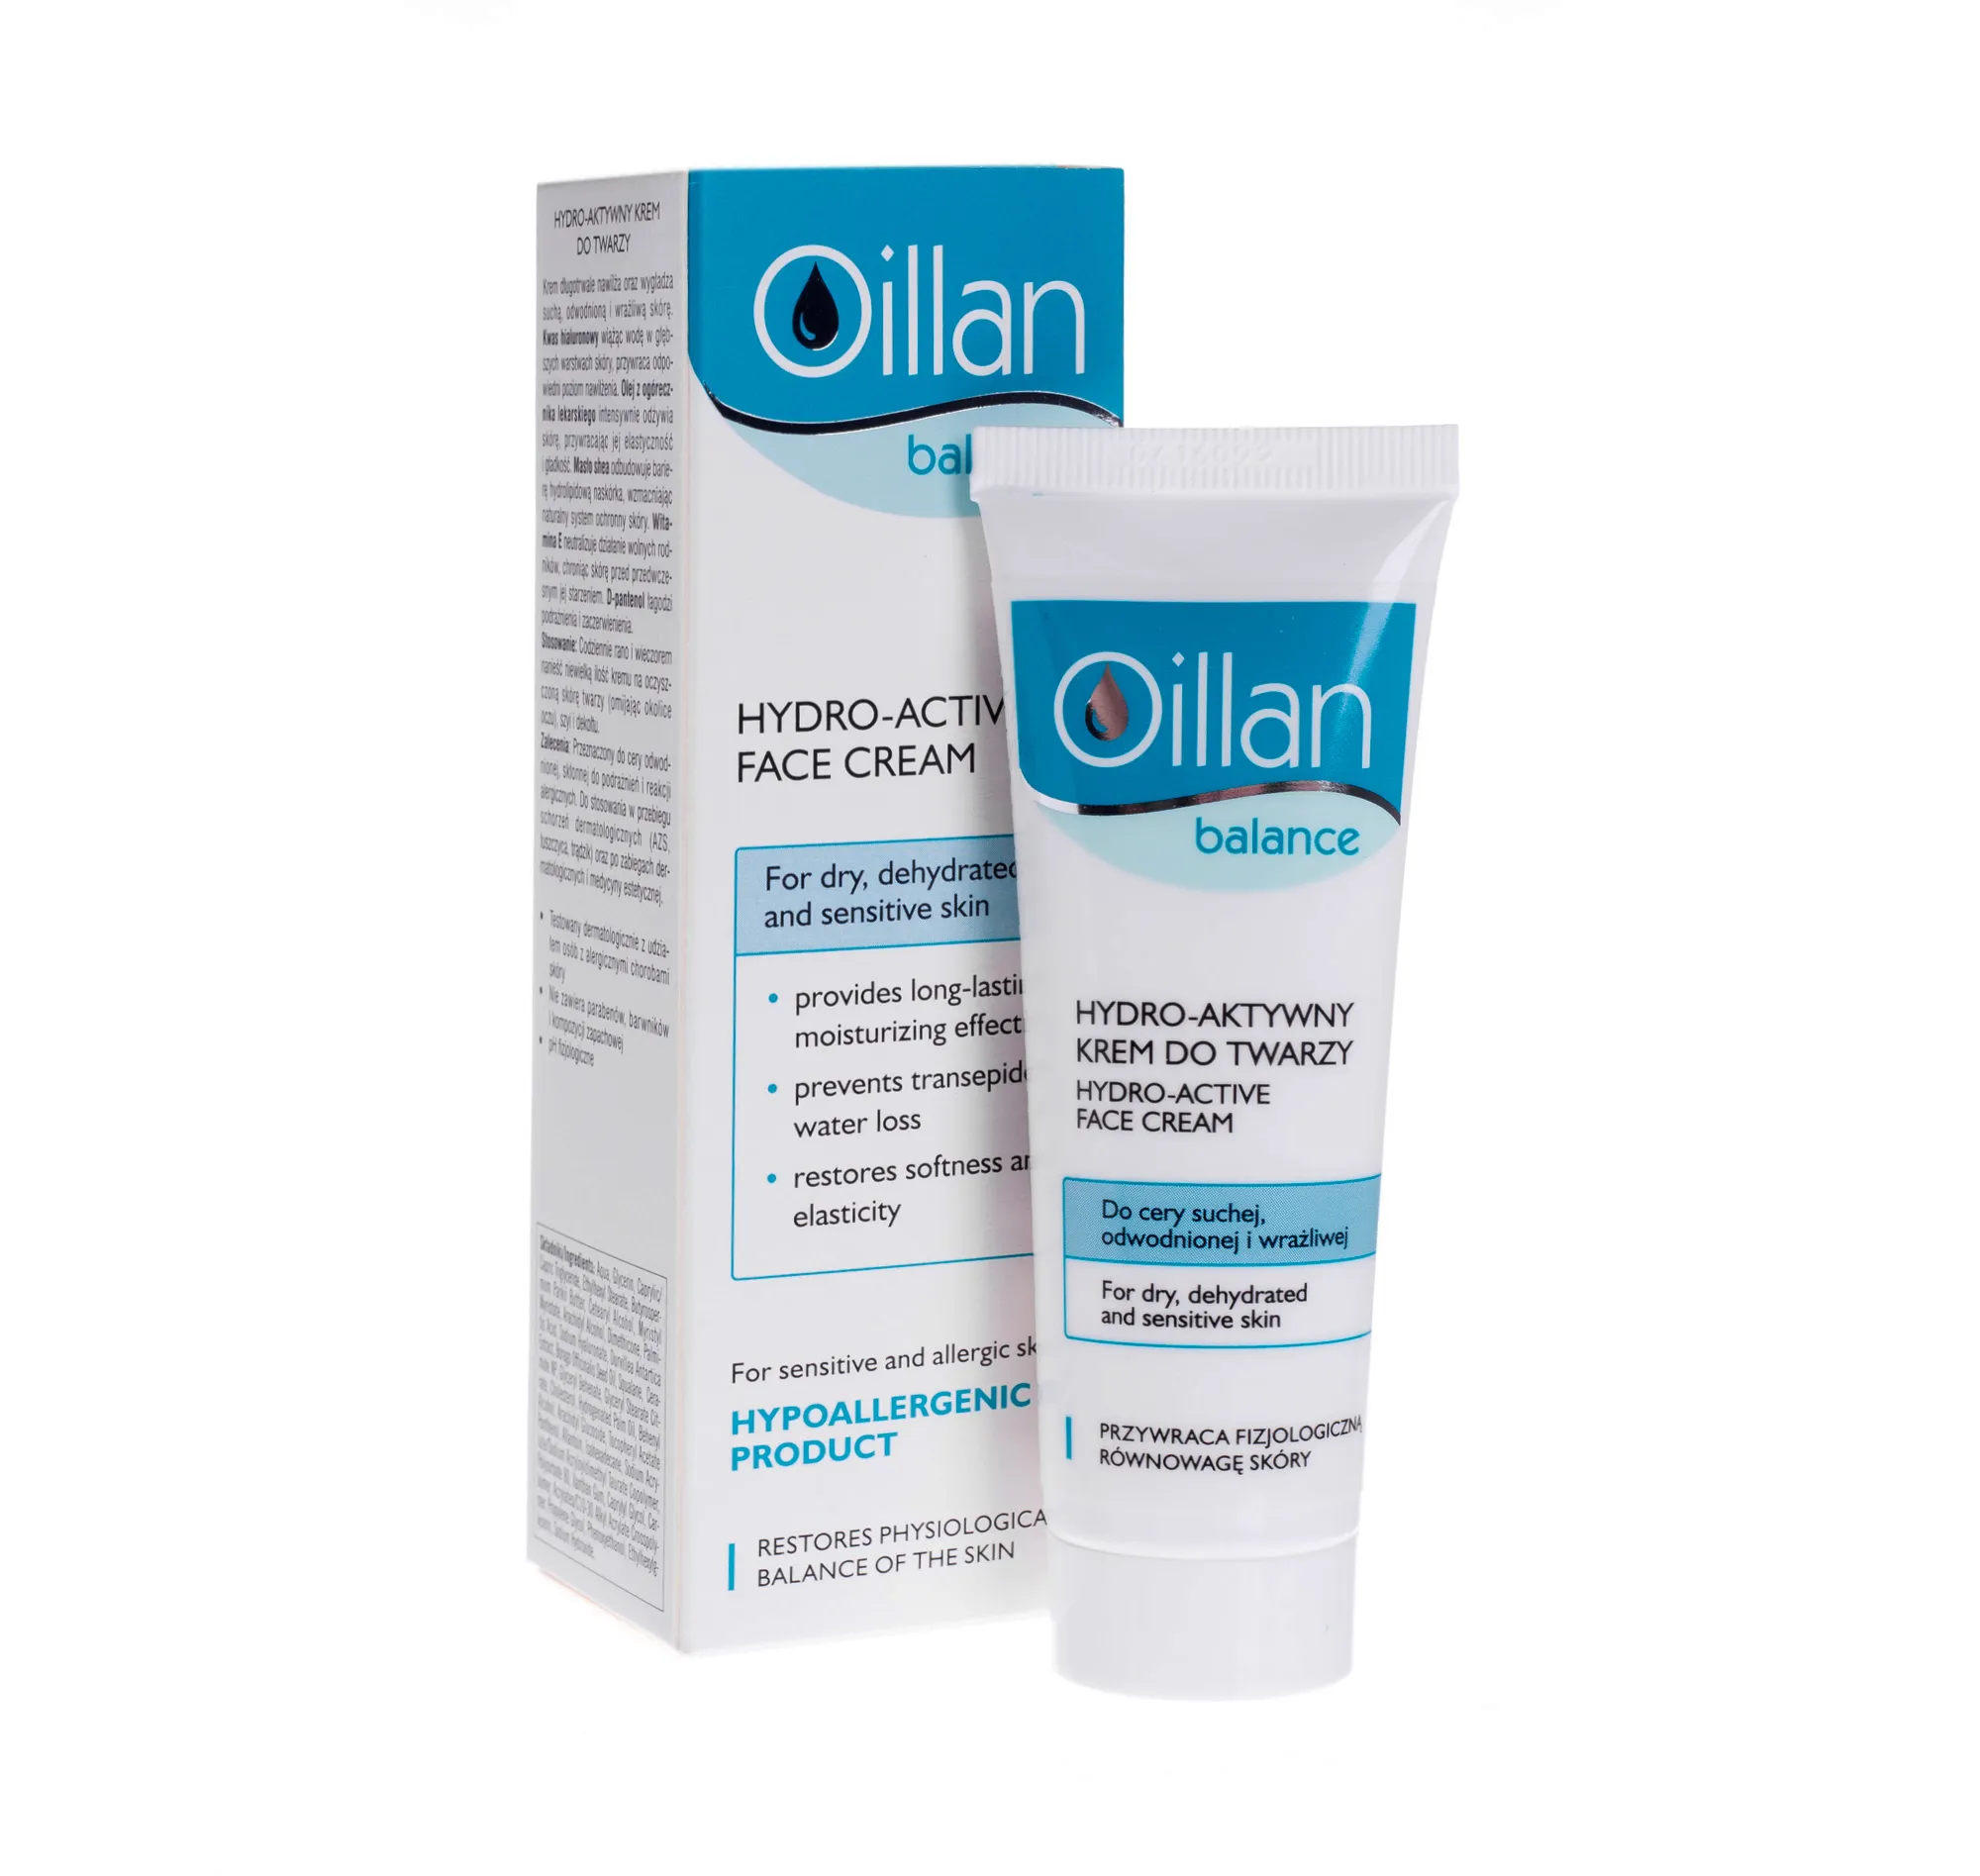 Oillan Balance, hydro-aktywny krem do twarzy, 50 ml